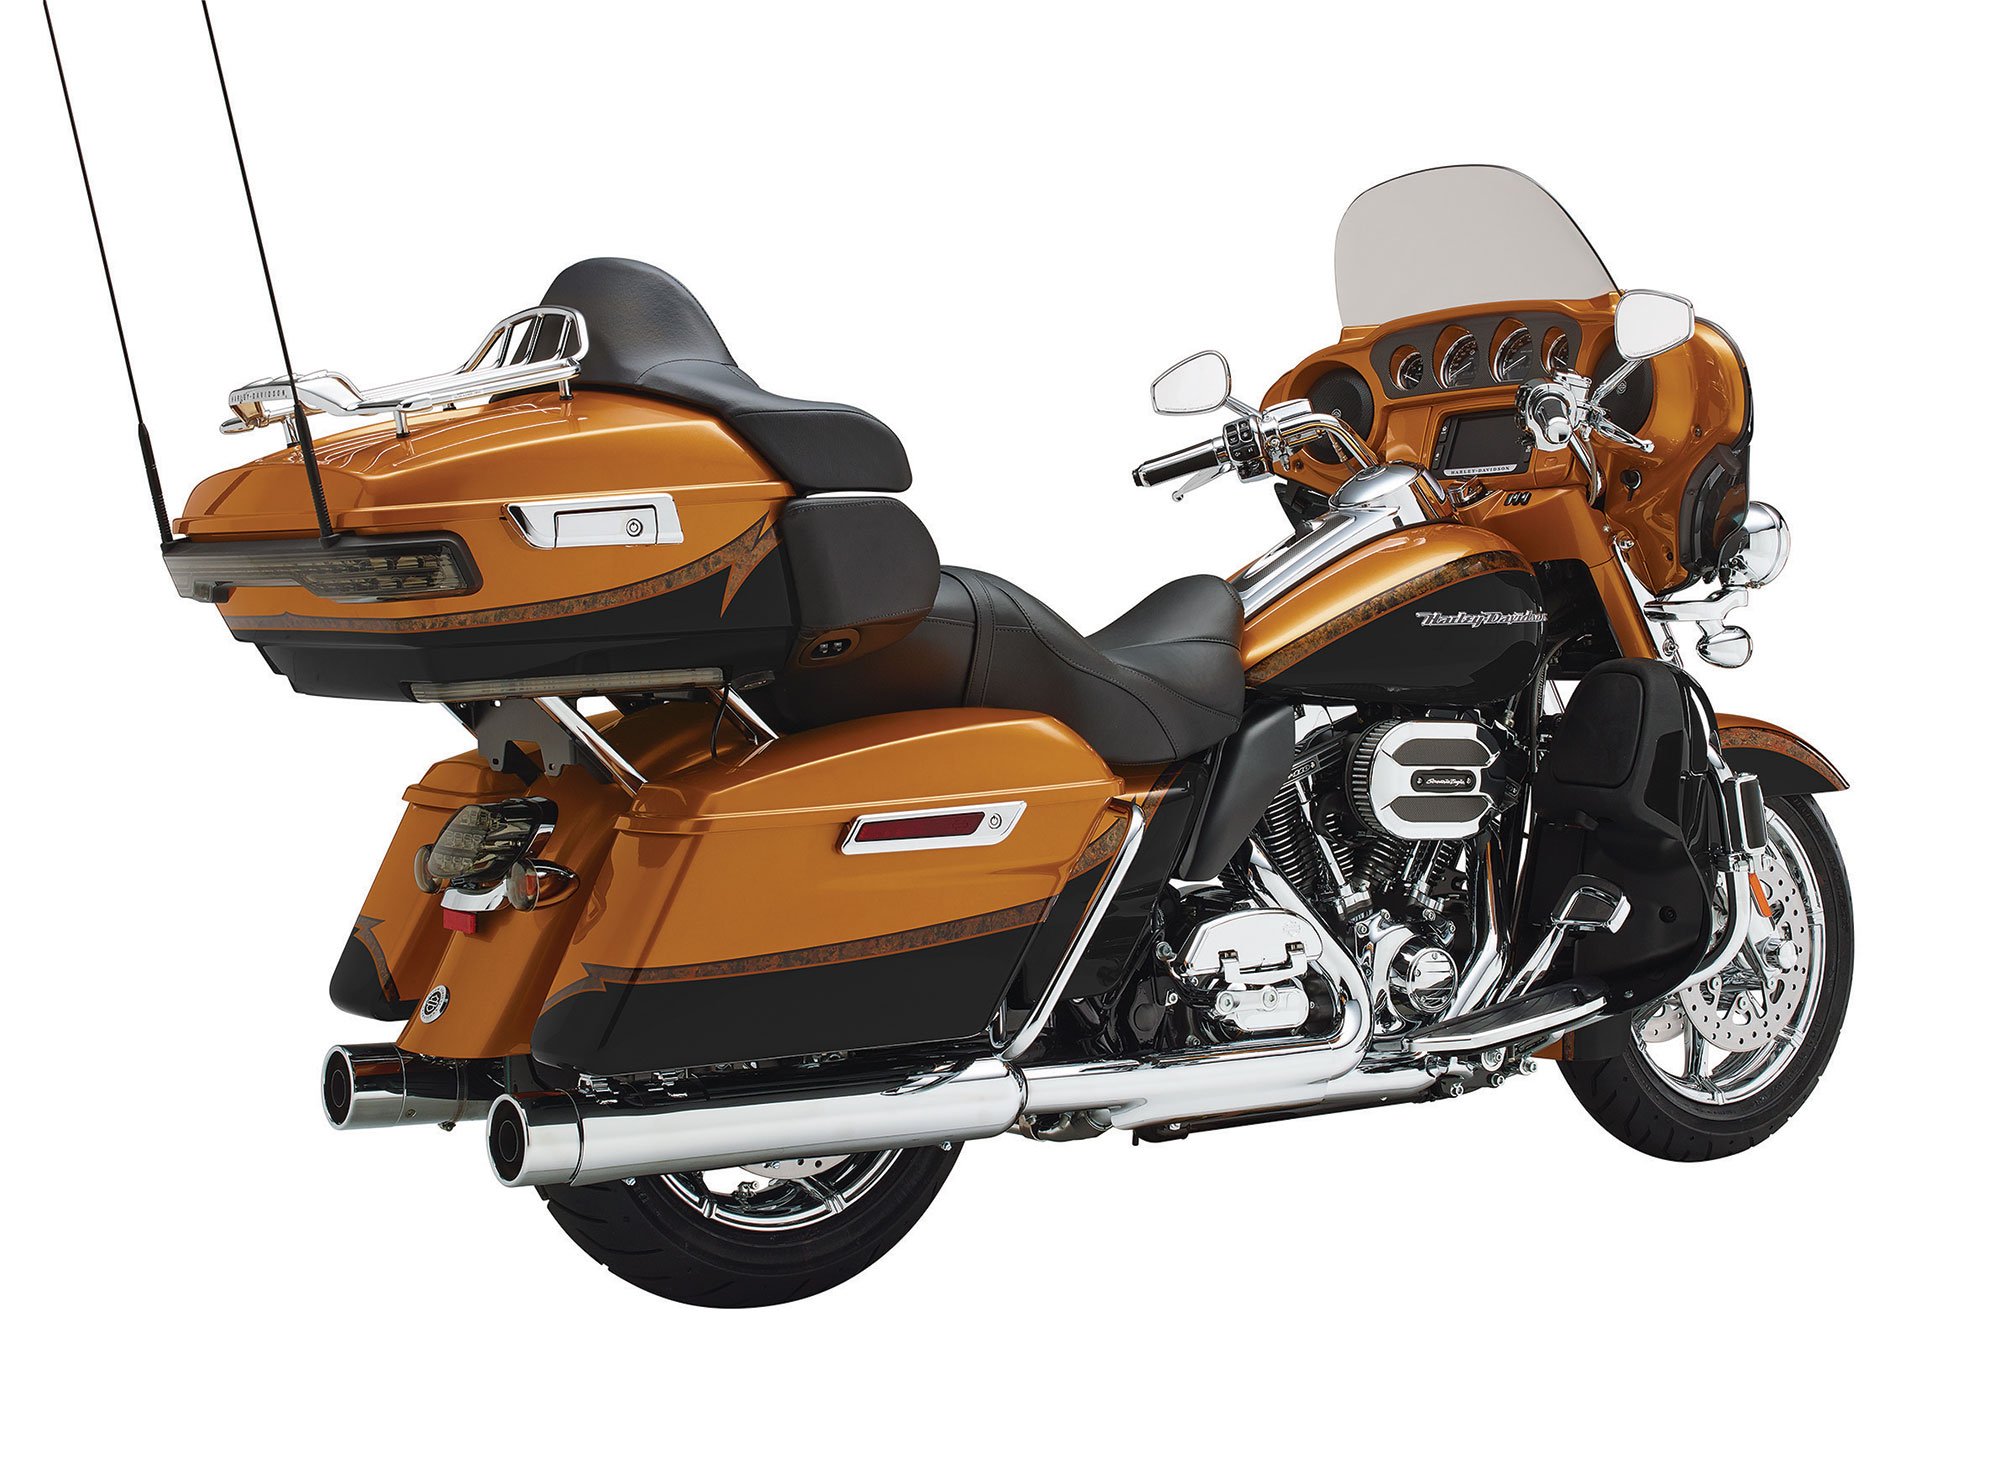 2015 Harley Davidson Flhtkse Cvo Limited Review